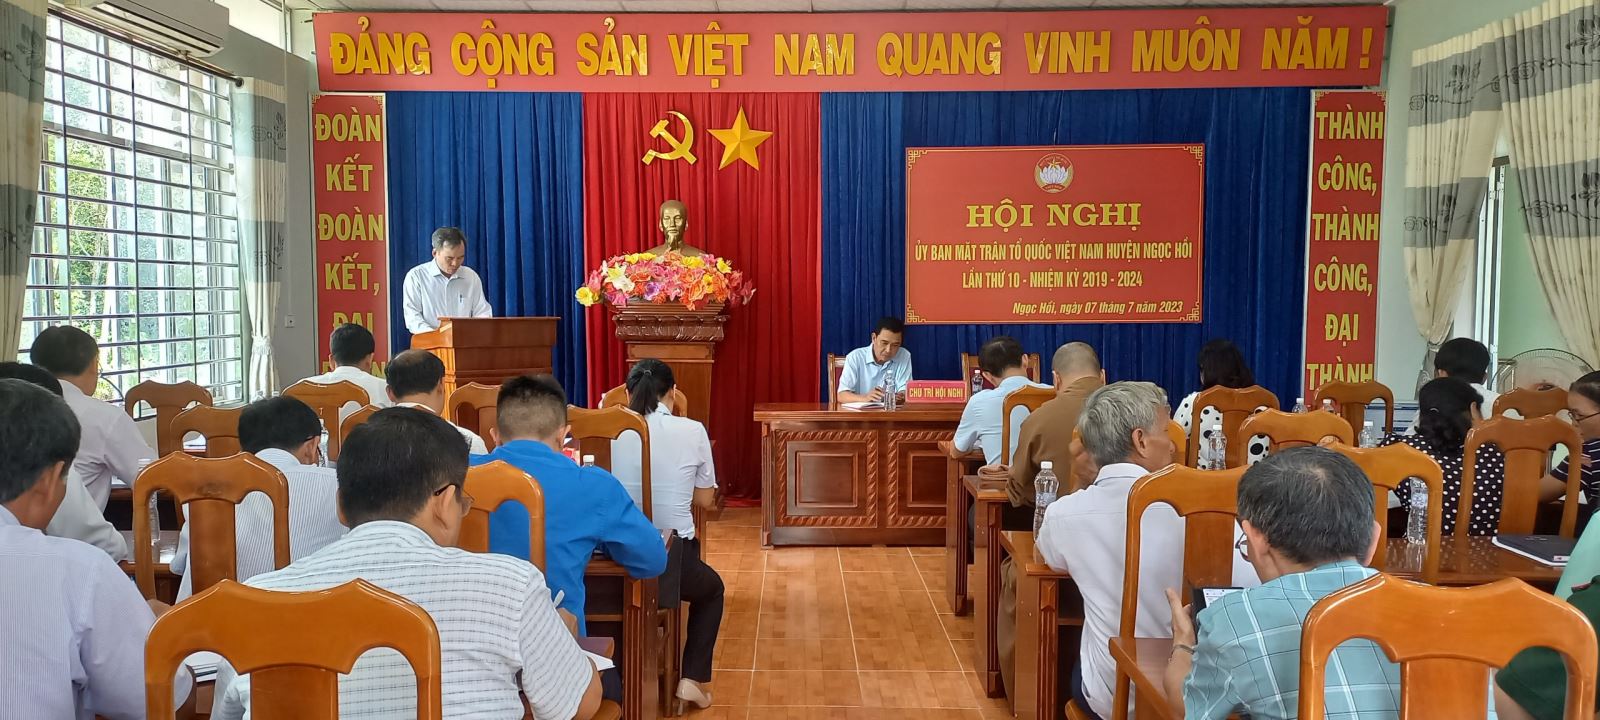 Hội nghị Ủy ban MTTQ Việt Nam lần thứ 10 khóa VI, nhiệm kỳ 2019-2024